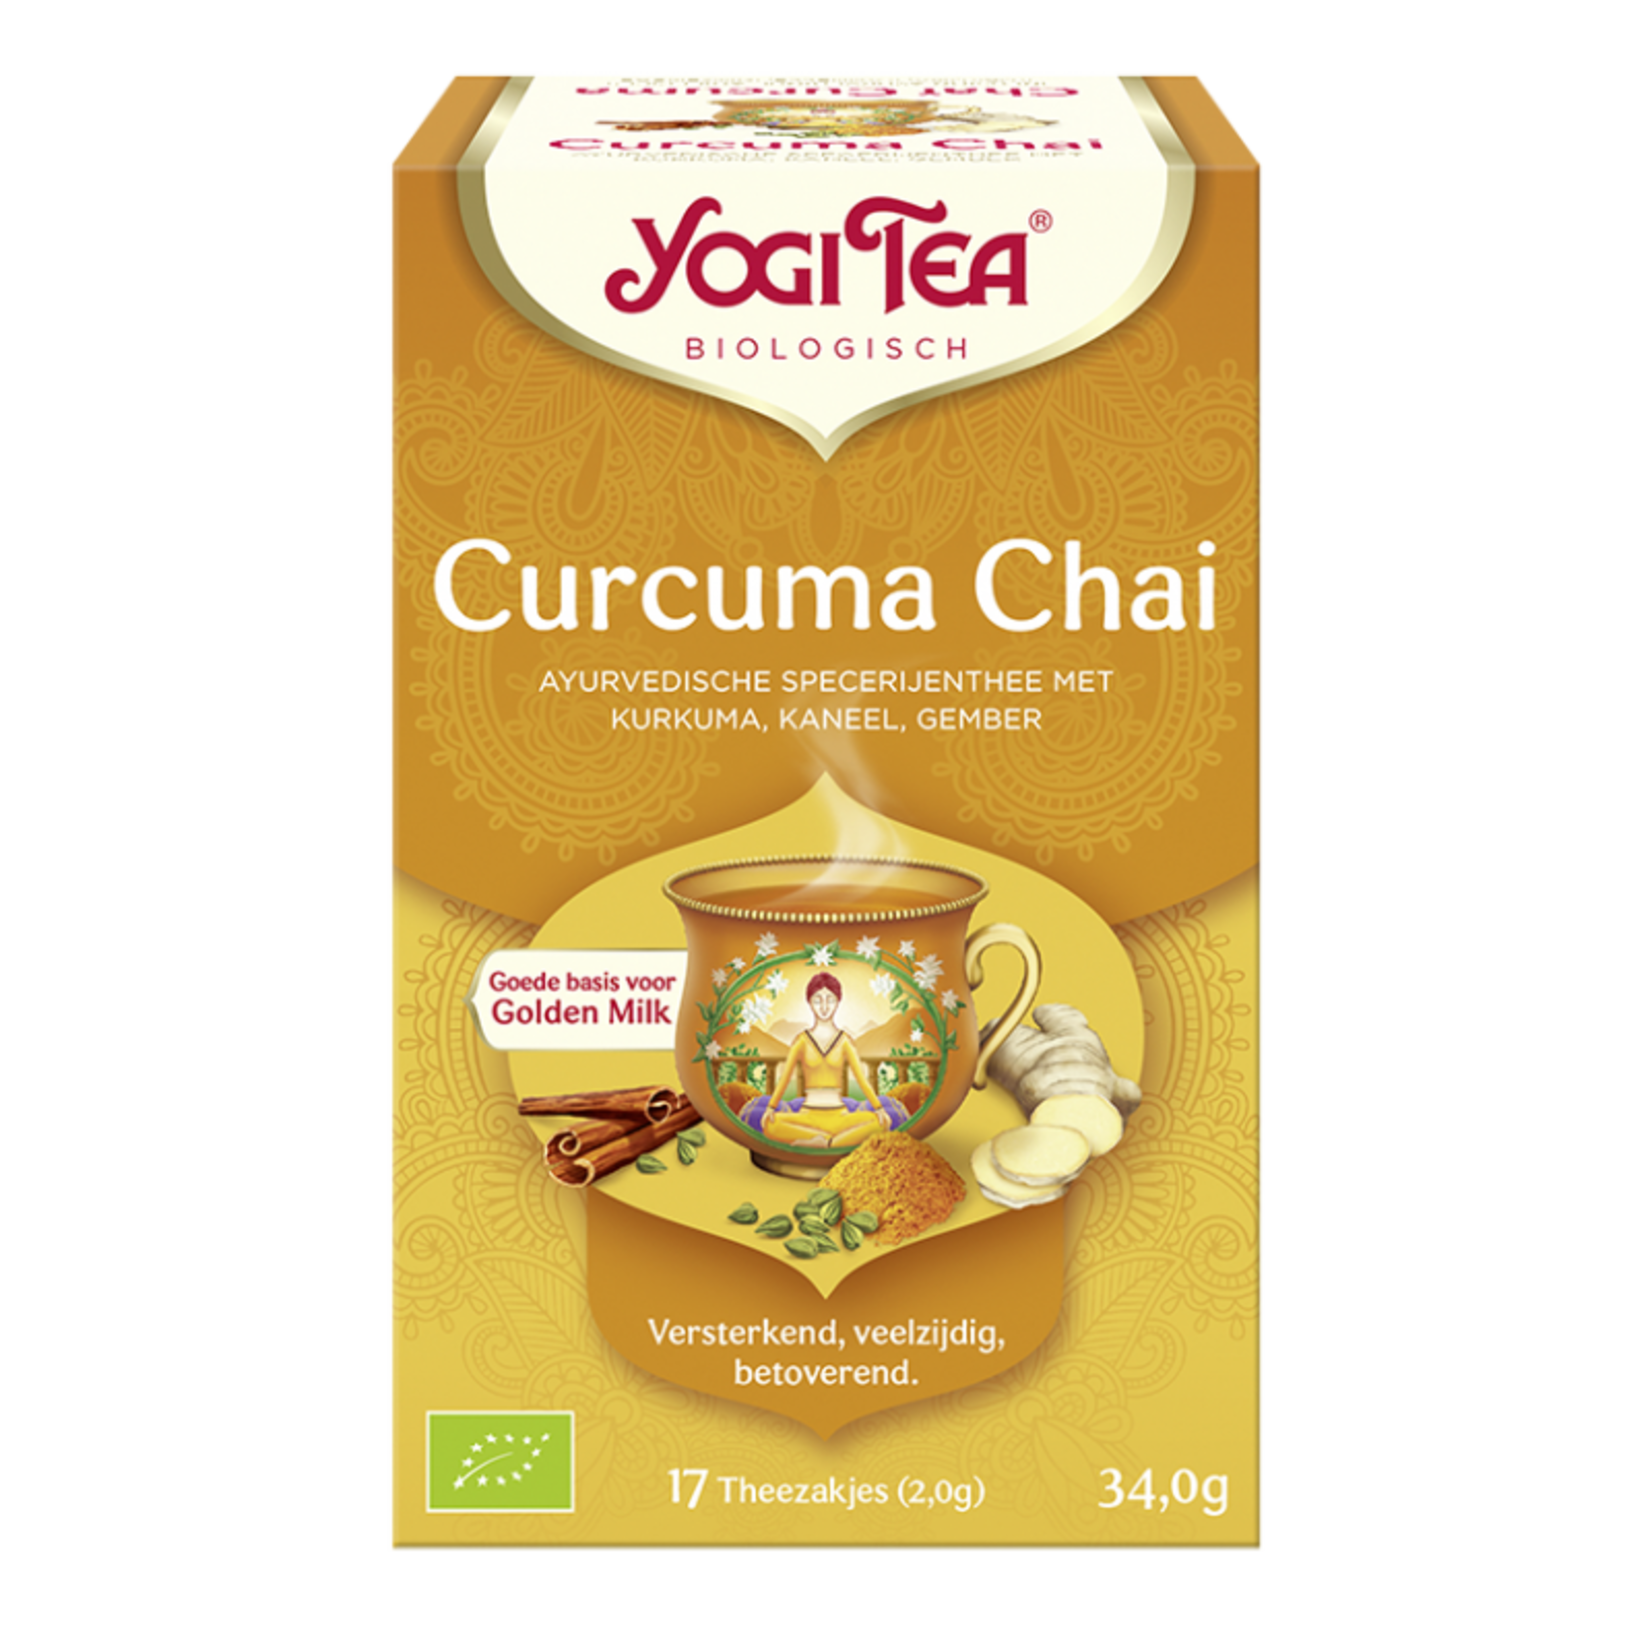 Yogi Tea Kurkuma Chai - Curcuma Chai